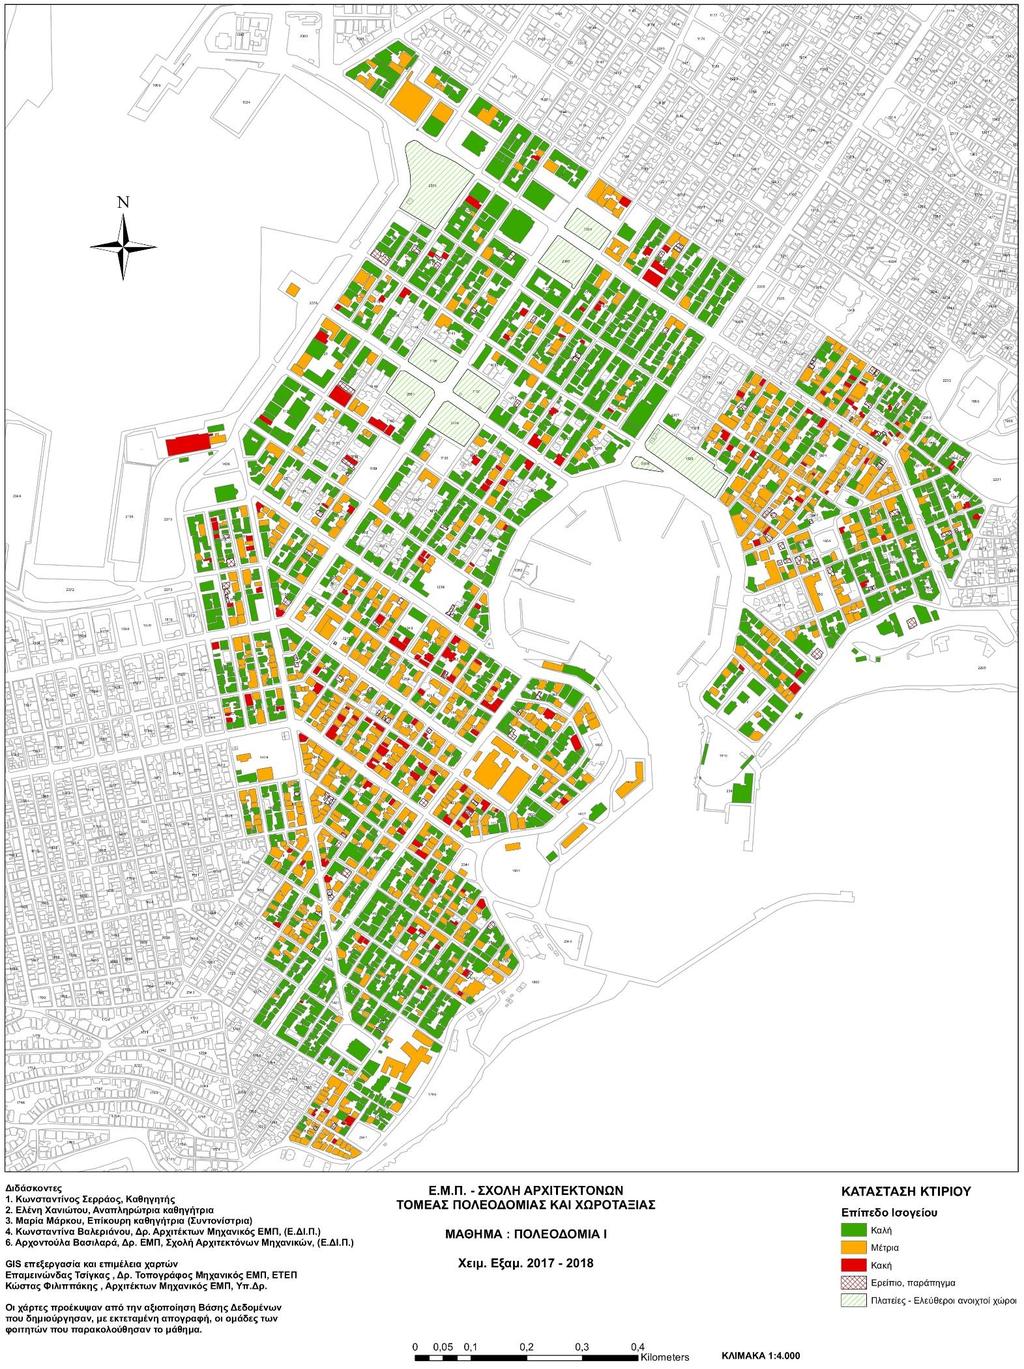 Γενικός χάρτης κατάστασης κτηρίου Σαν νεόκτιστη περιοχή είναι λογικό πως η κατάσταση των υπαρχόντων κτηρίων θα είναι σχετικά καλή.